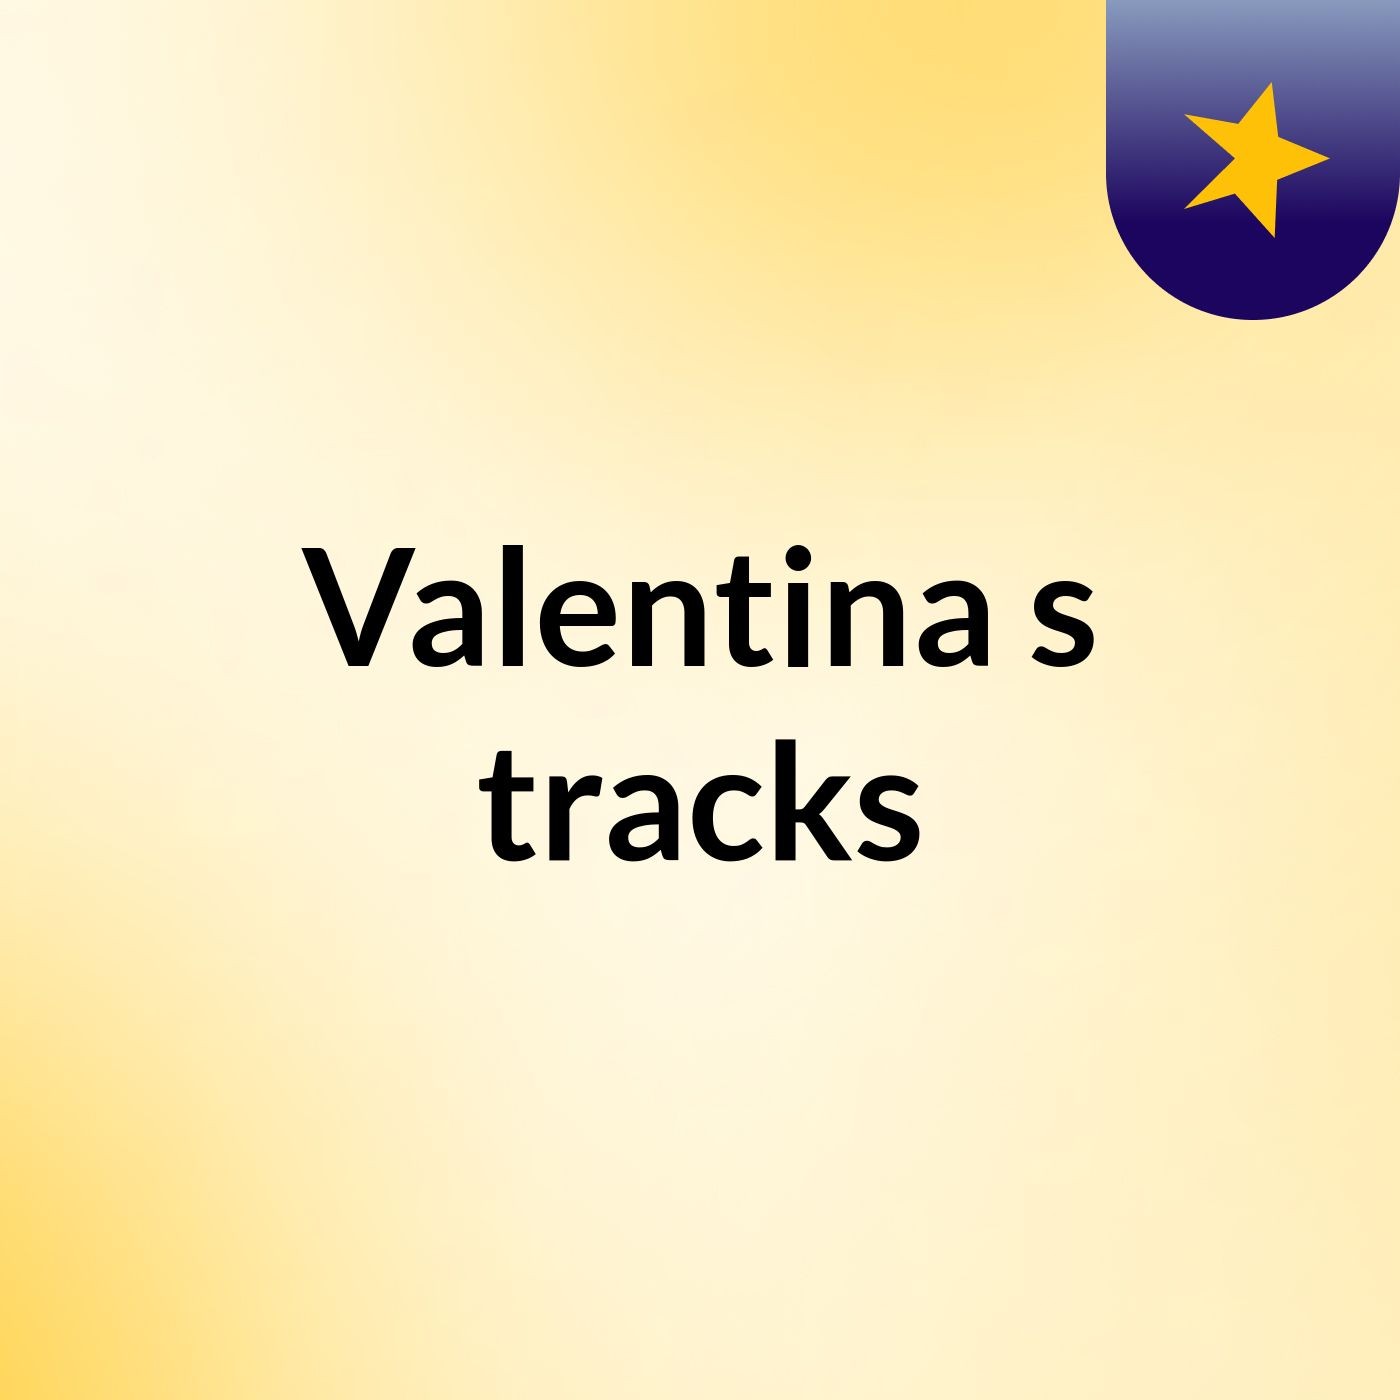 Valentina's tracks